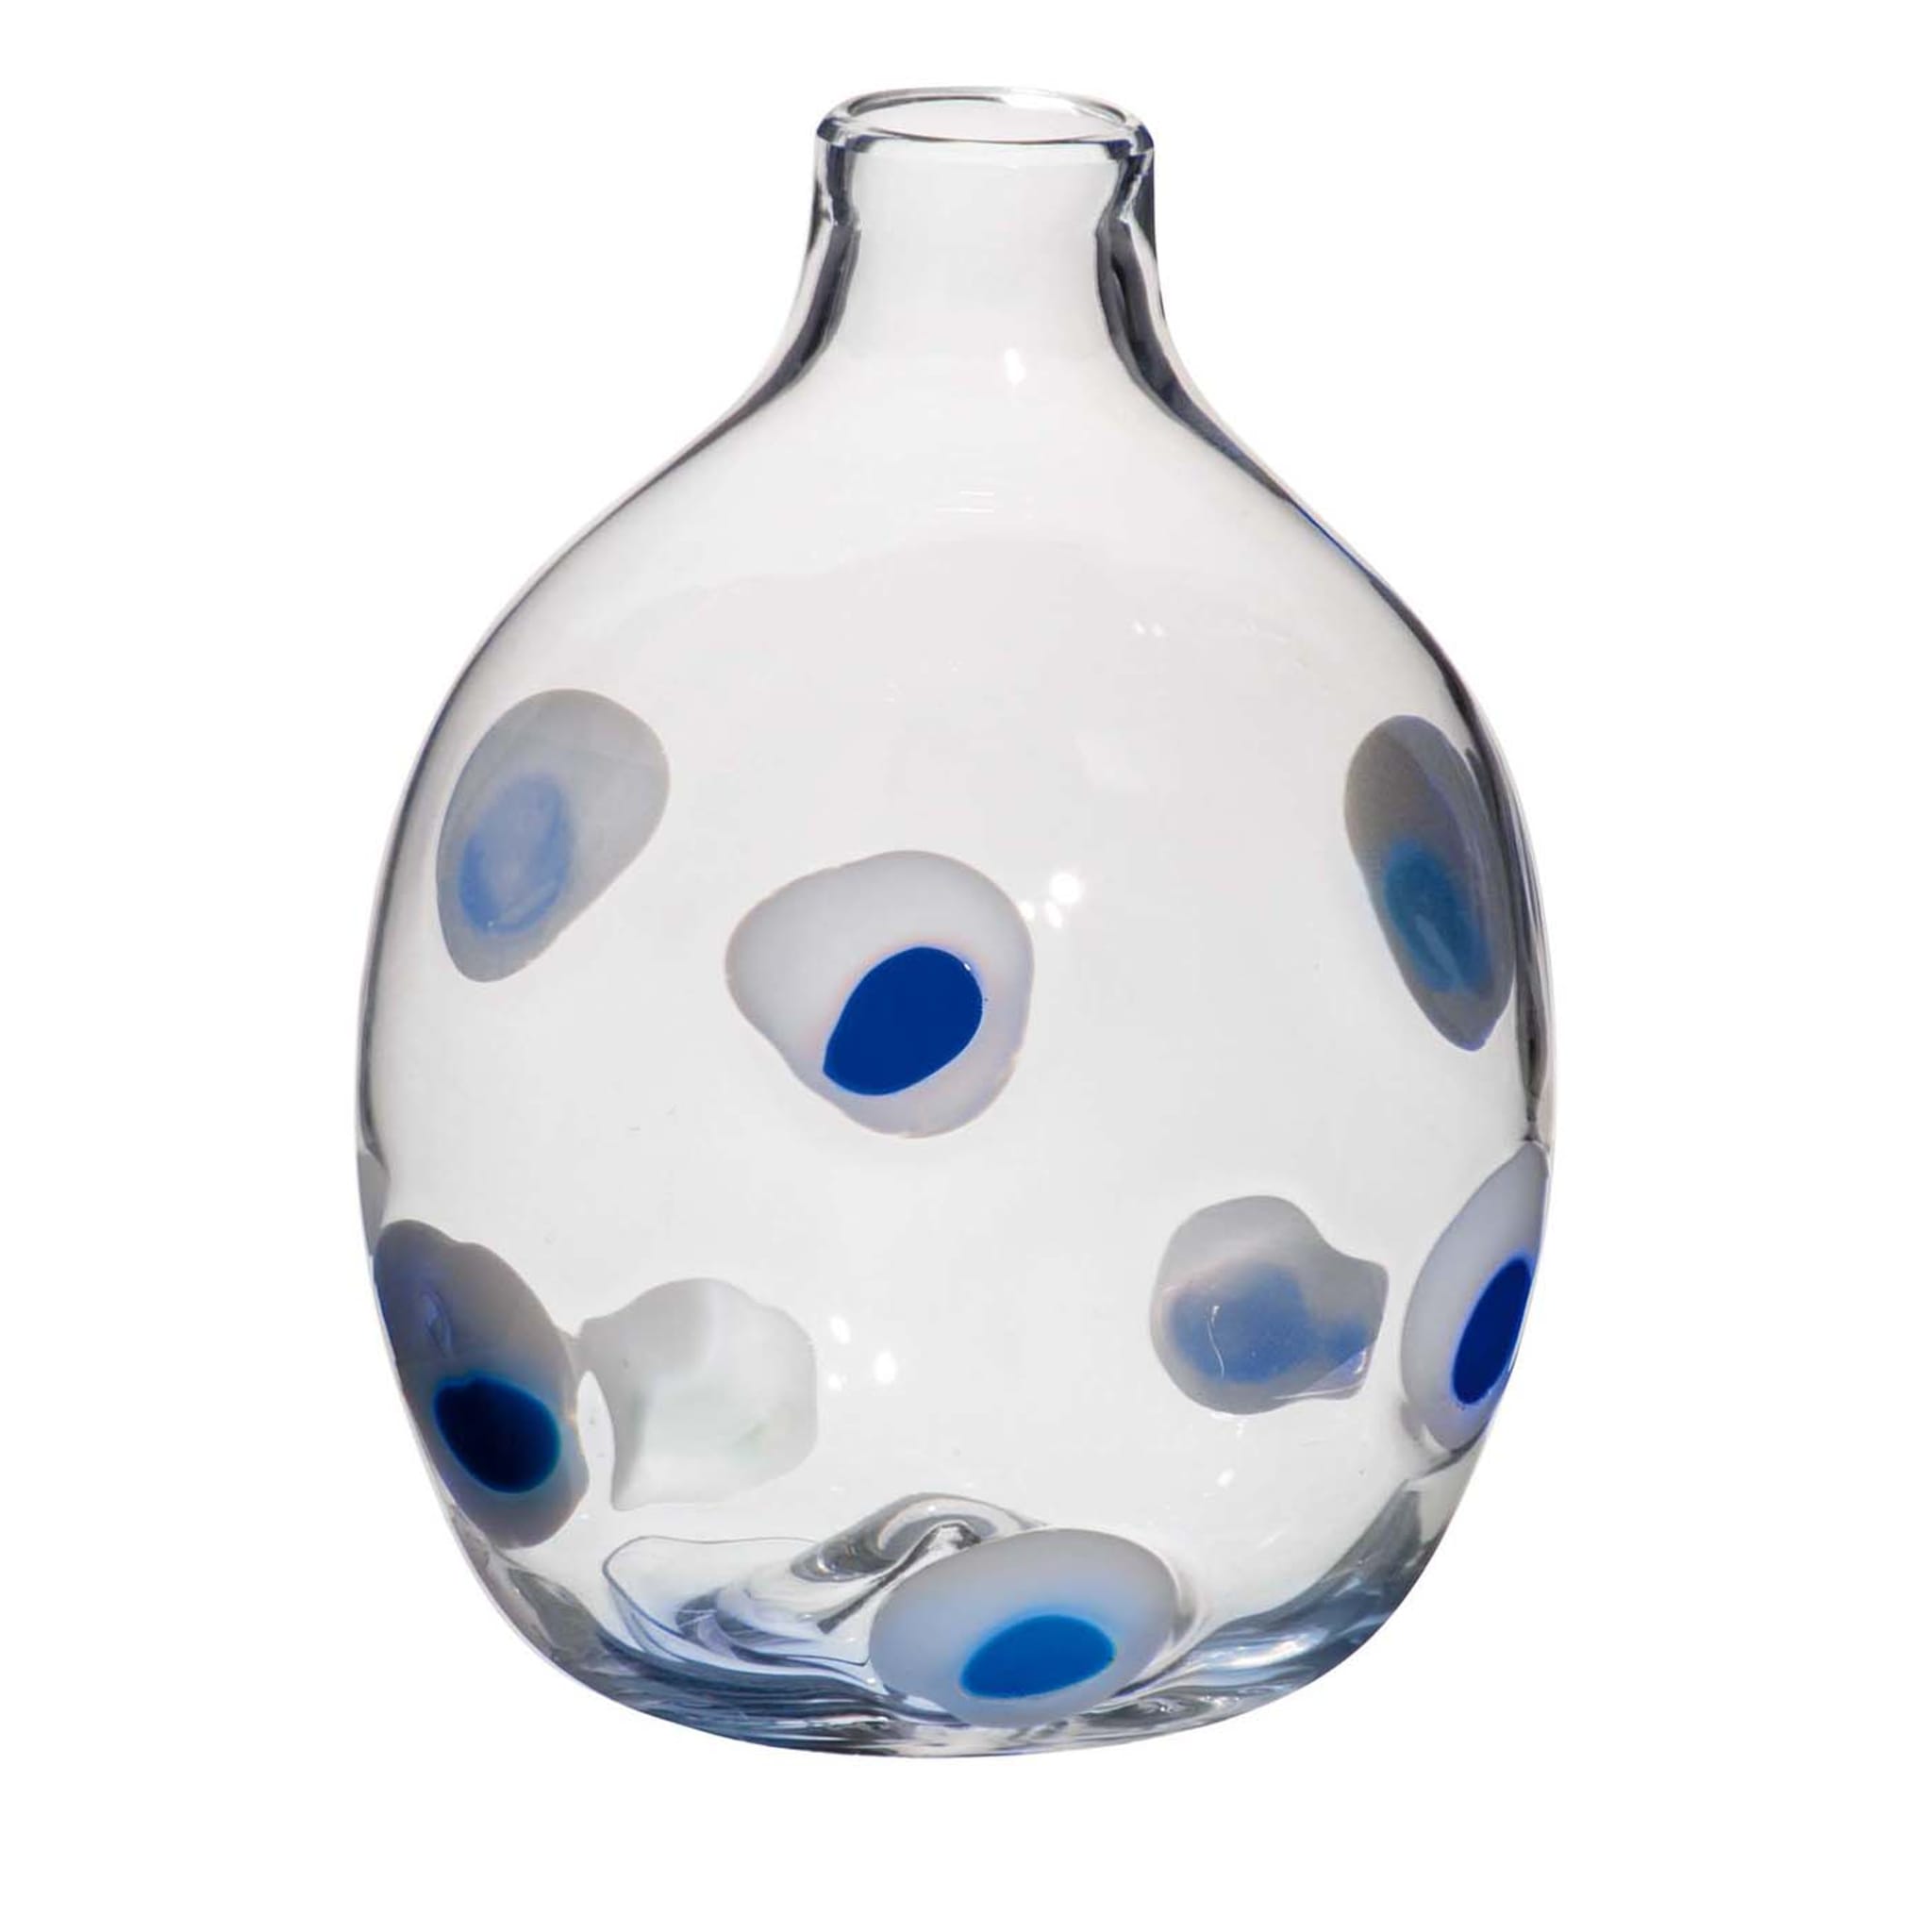 Einblütige Vase mit blauen und weißen Tupfen von Carlo Moretti - Hauptansicht